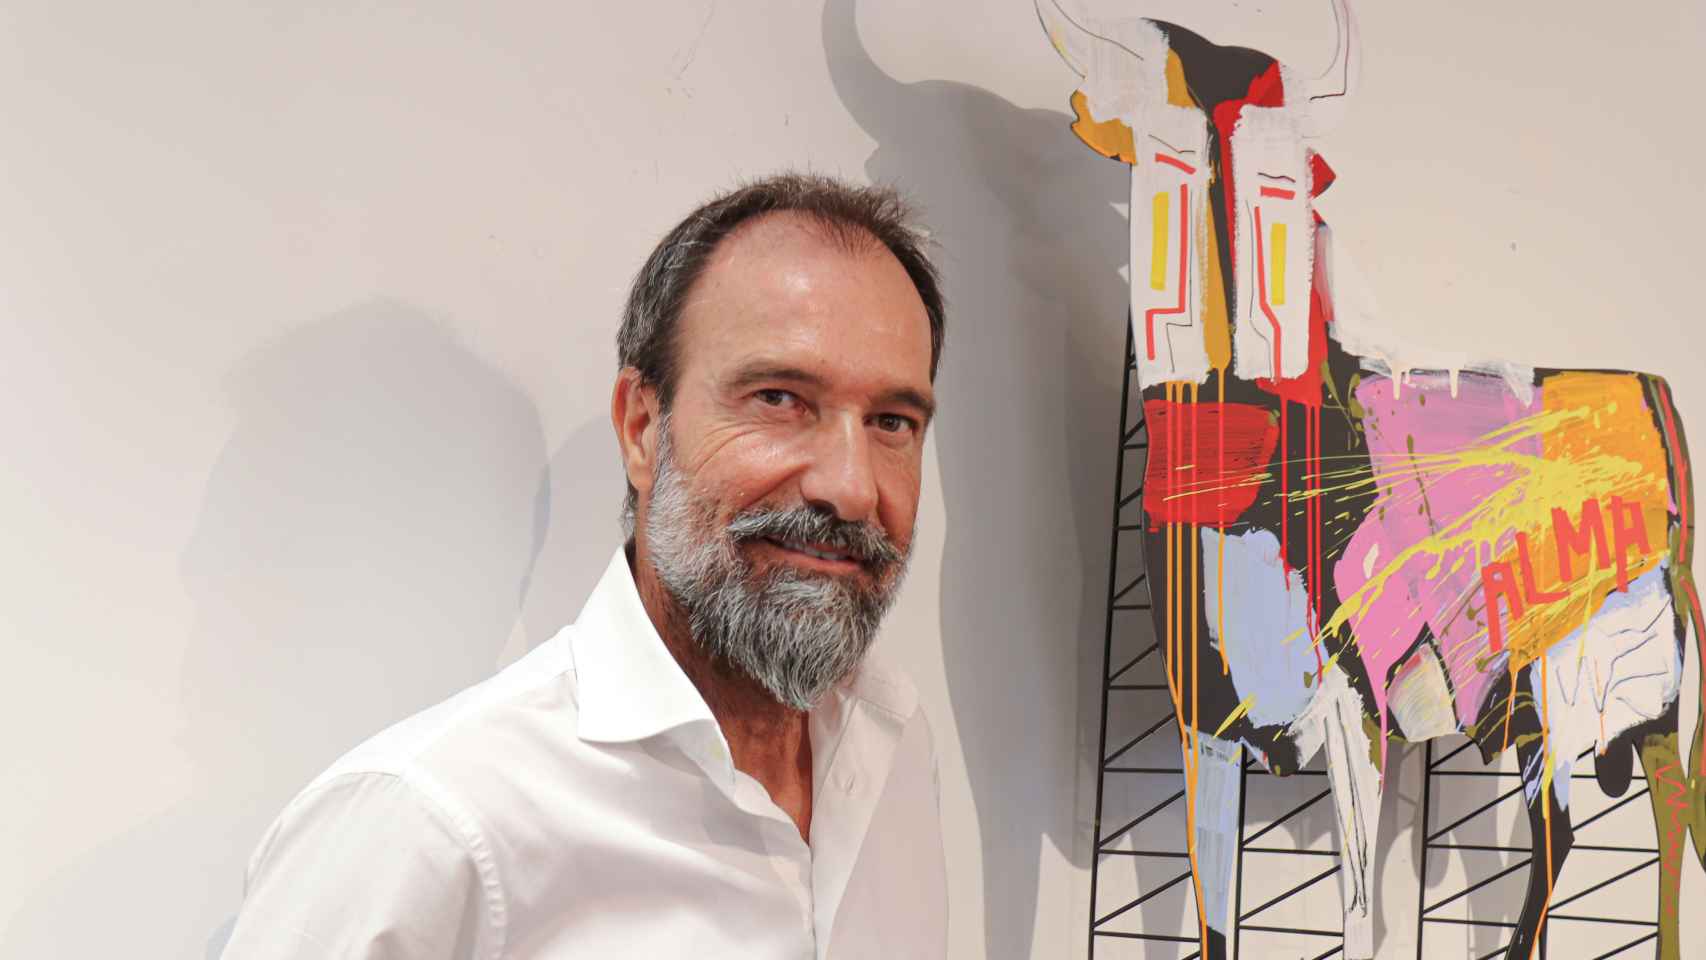 El comisario Eloy Martínez de la Pera frente a una de las creaciones de Jordi Mollà